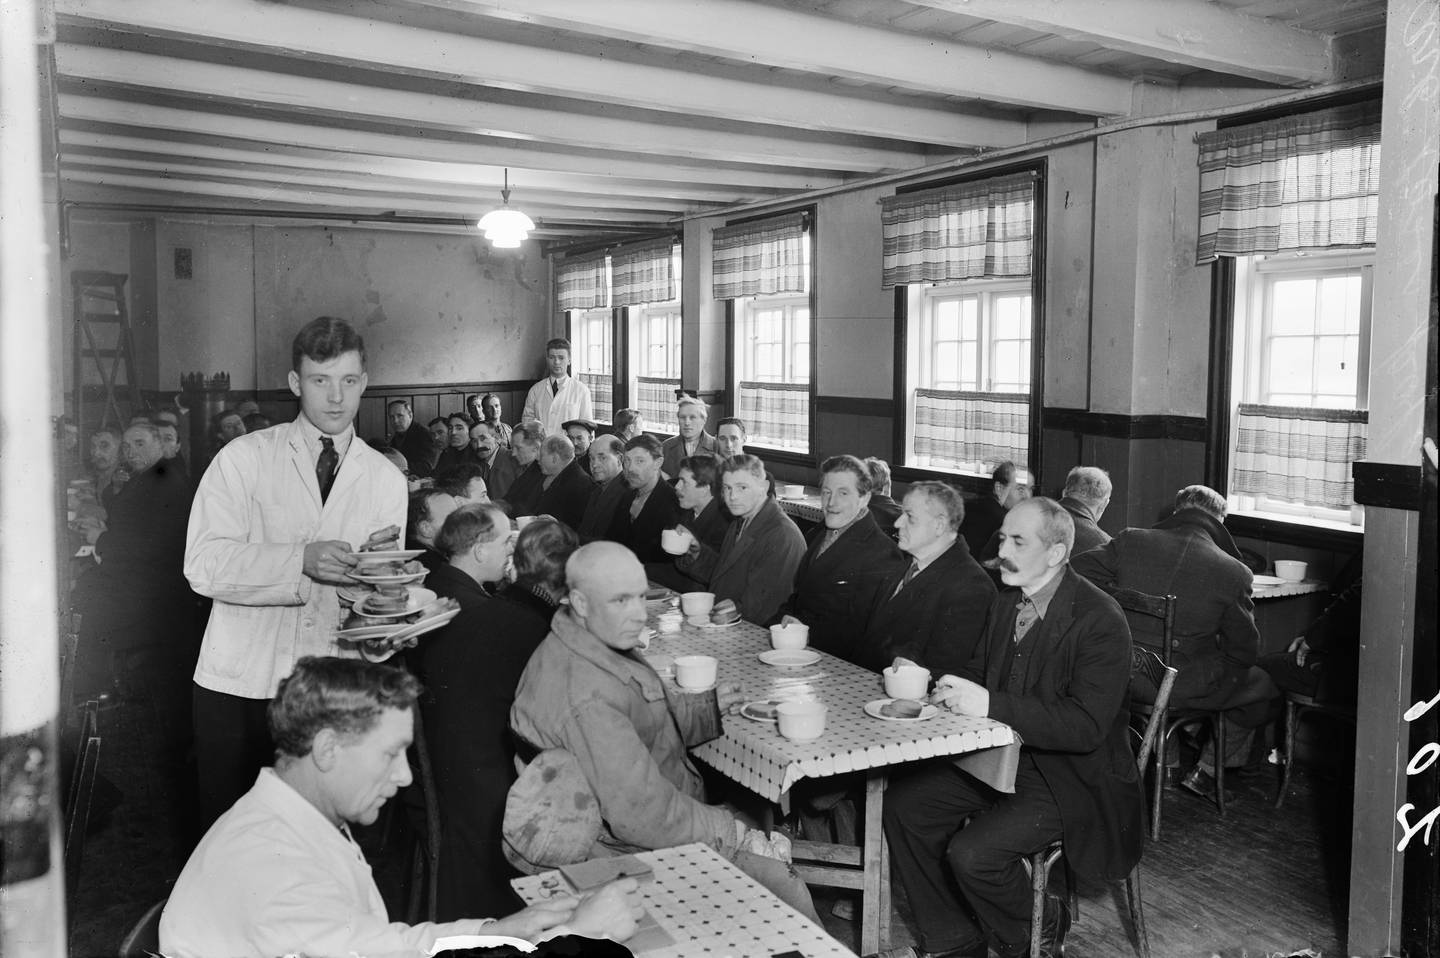 De arbeidsløses kafé i Rødfyllgata 12 på Vaterland cirka 1935. Kafeen ble drevet av Oslo faglige samorganisasjon fra 1929 til 1939 og kunne servere 150 personer gratis mat samtidig. Bygningen ble revet i 1956 og står i dag på Norsk Folkemuseum.